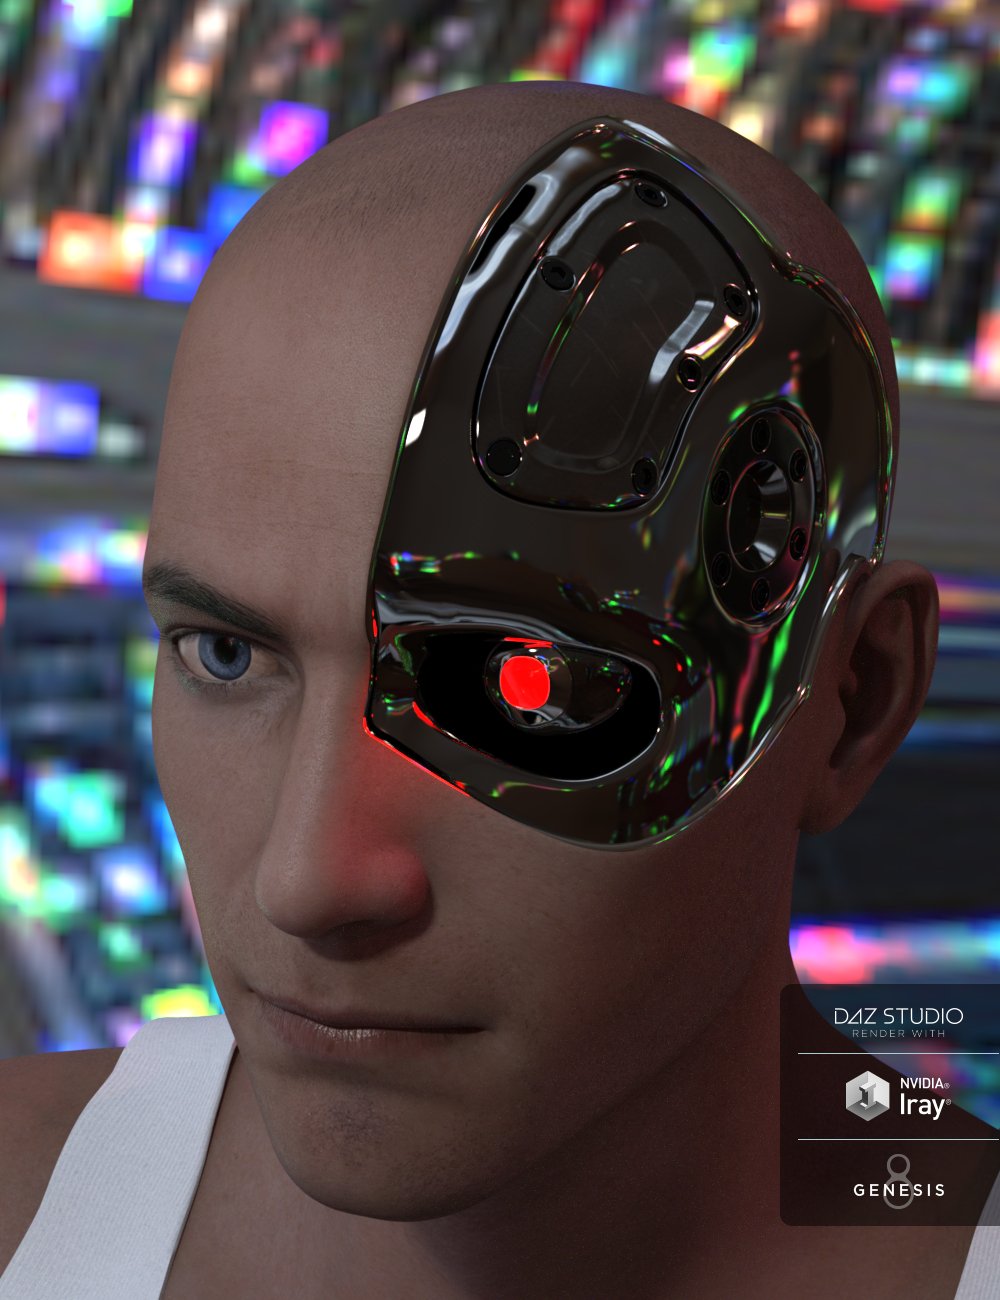 Cybernetic Head for Genesis 8 Male(s) by: JSchaper, 3D Models by Daz 3D